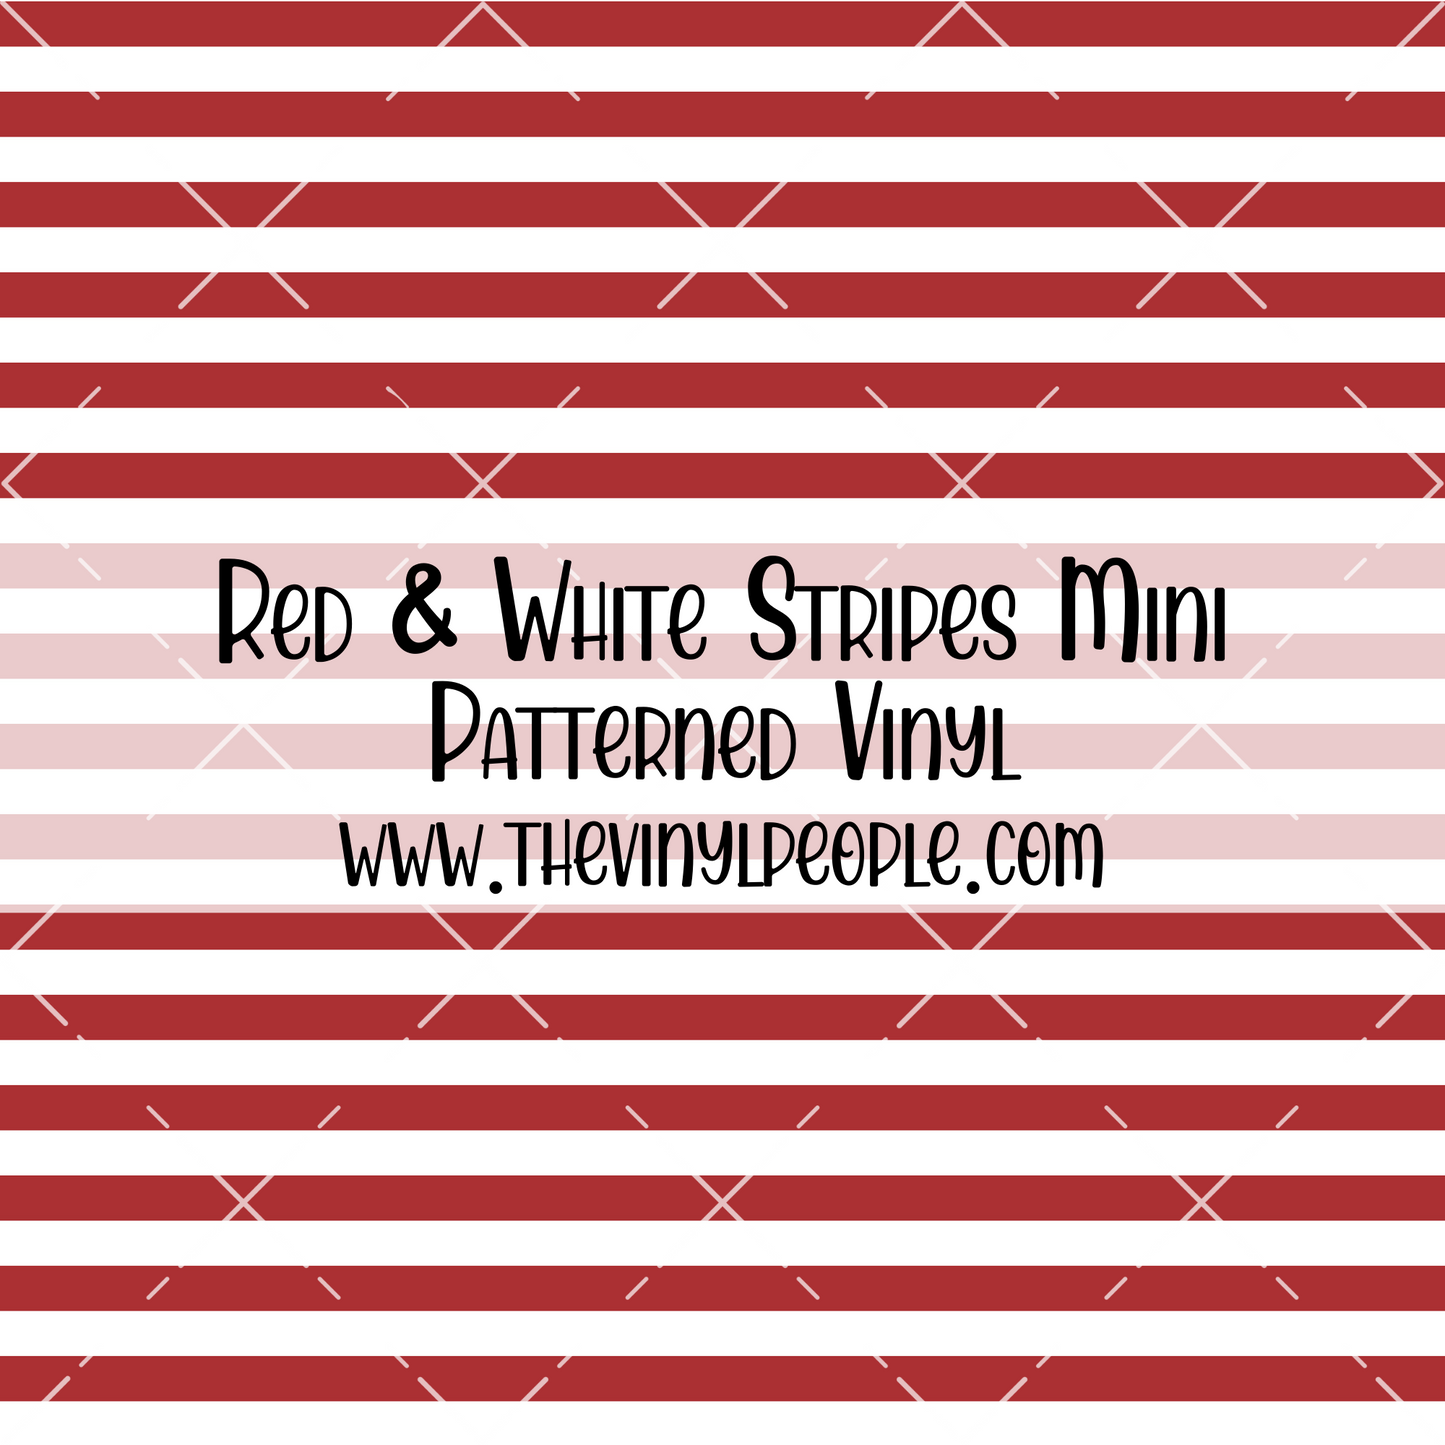 Red & White Stripes Patterned Vinyl